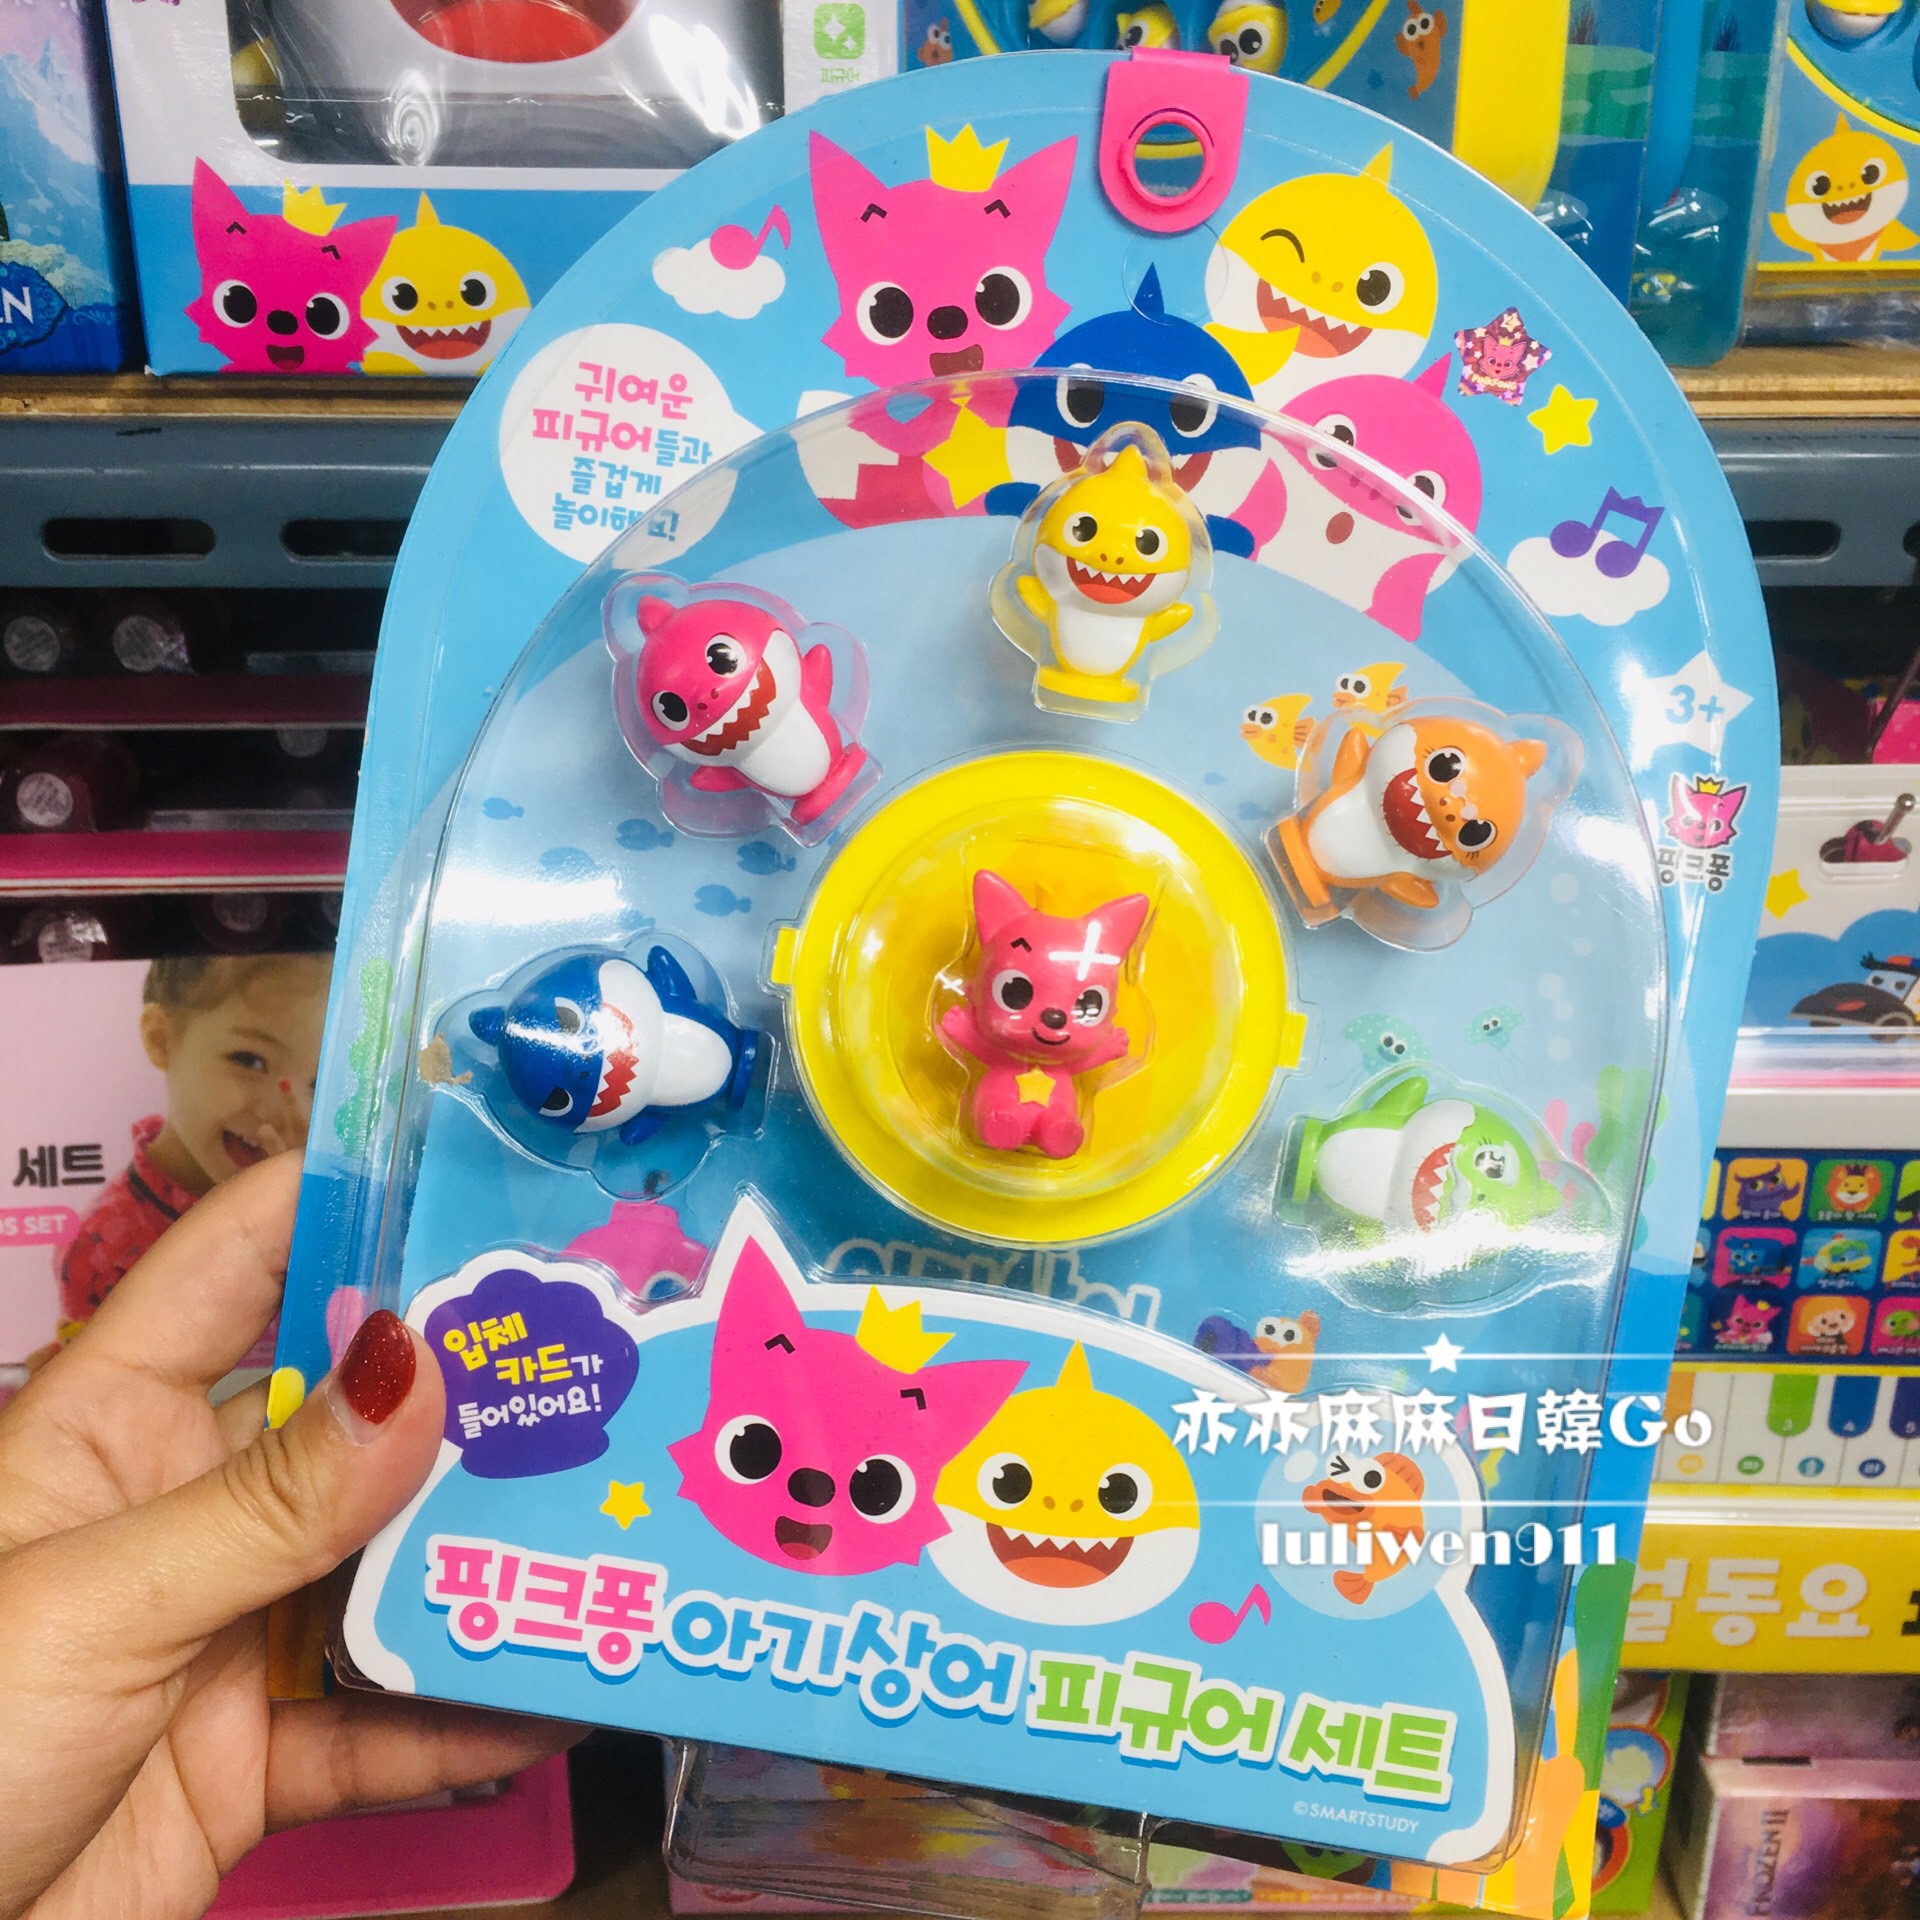 现货亦麻韩国采购碰碰狐pinkfong狐狸鲨鱼家族过家家玩具人偶模型